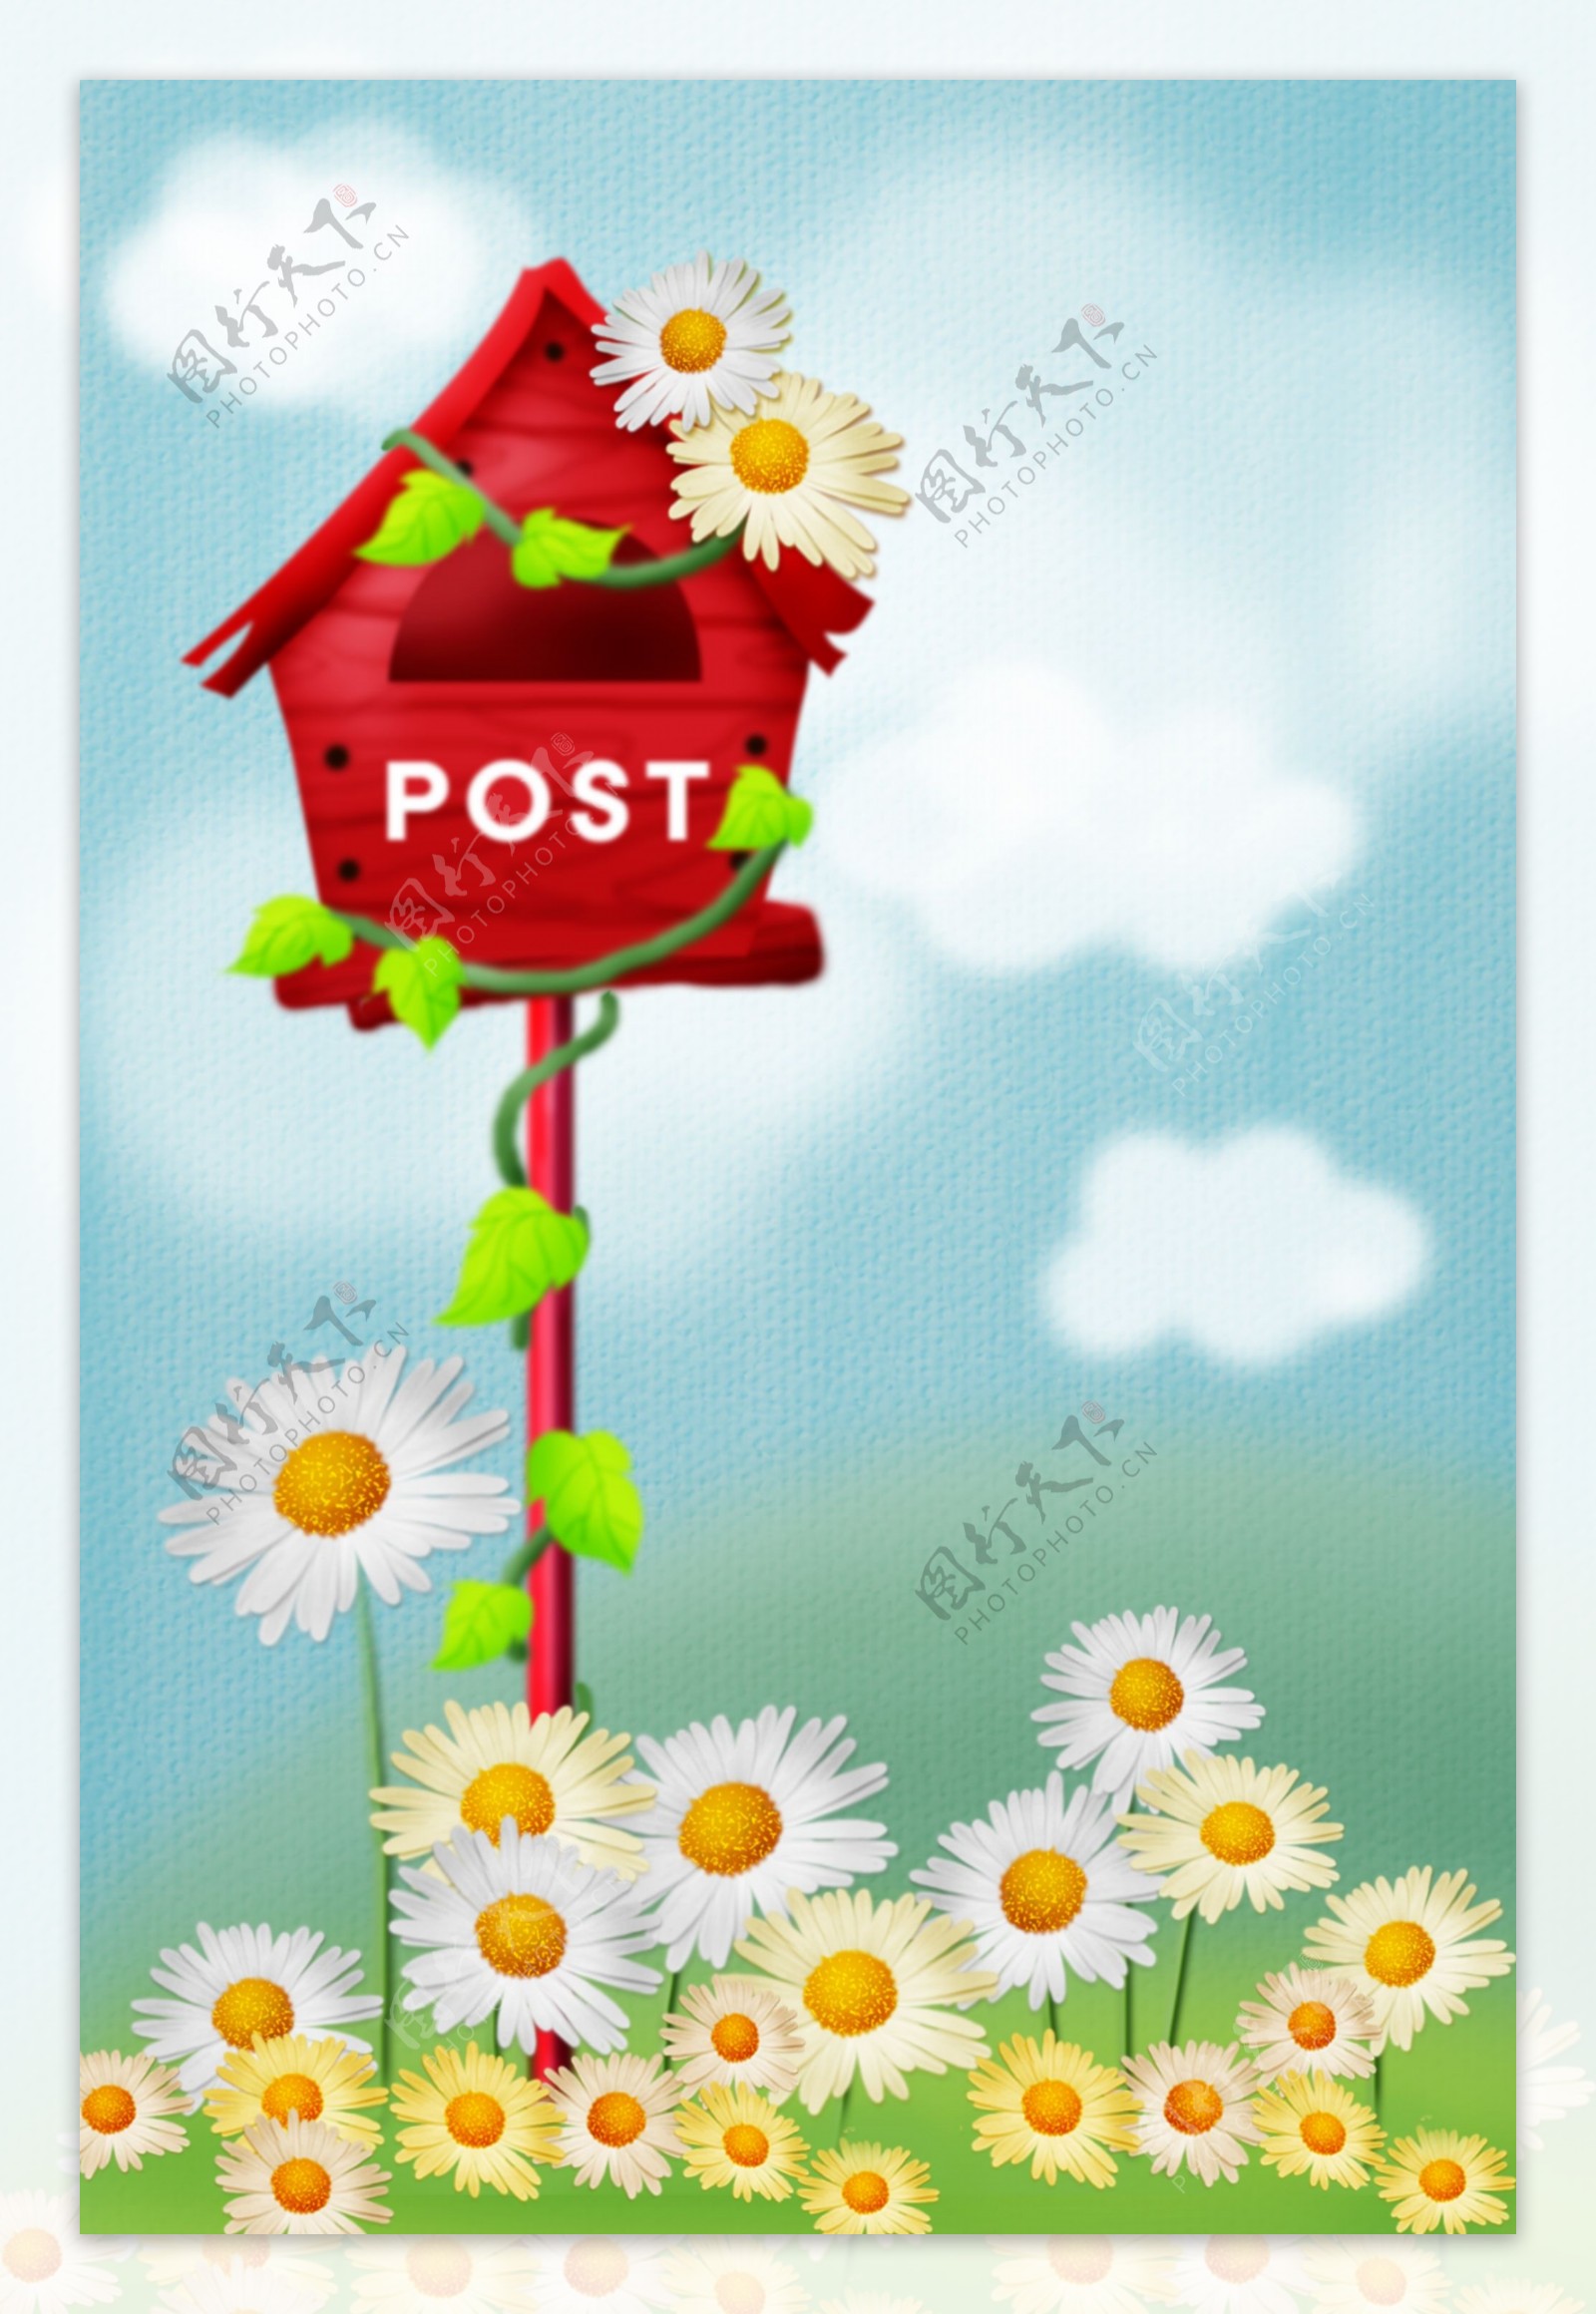 鲜花围绕的邮箱